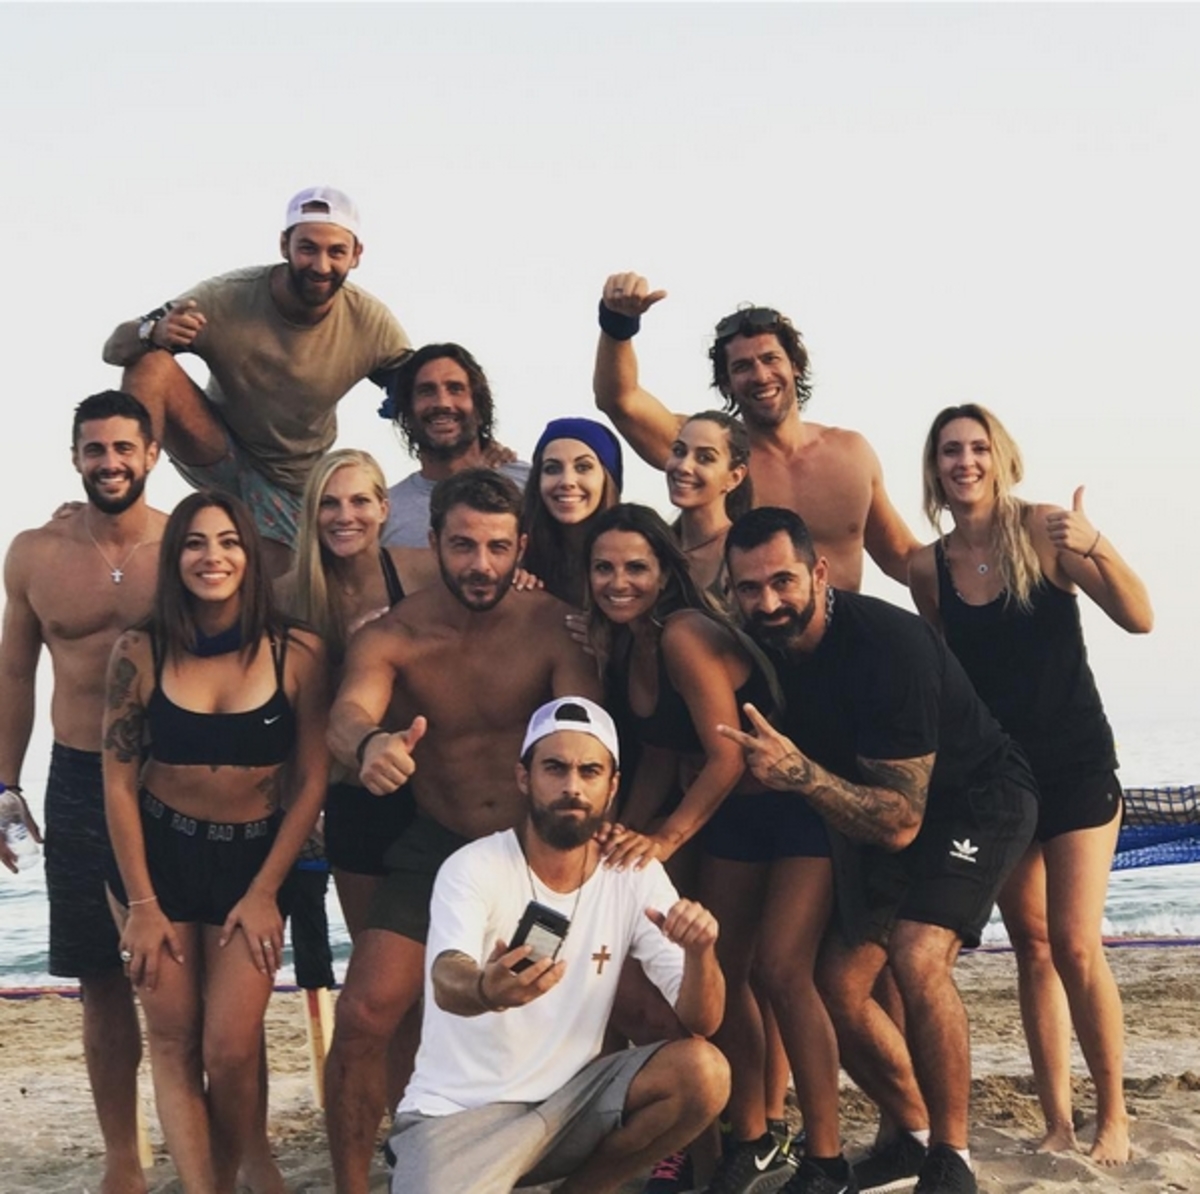 Γιώργος Αγγελόπουλος: Ξανά στην παραλία με όλους τους Survivors για καλό σκοπό! [pics,vids]